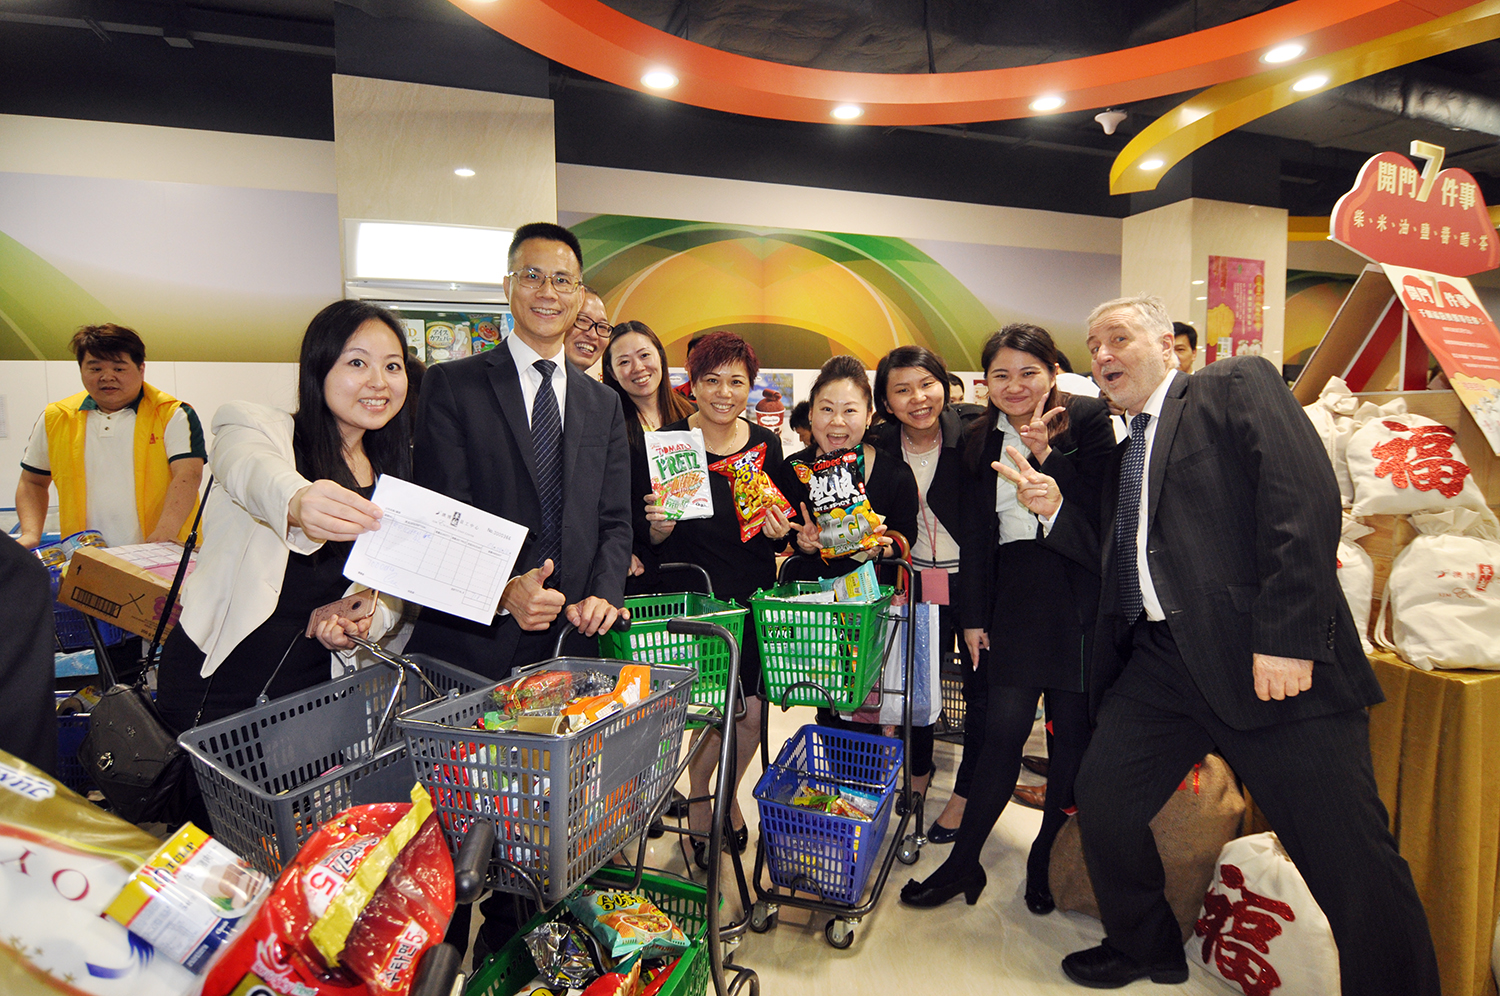 SJM | Supermercado exclusivo para funcionários “sem ligação” política